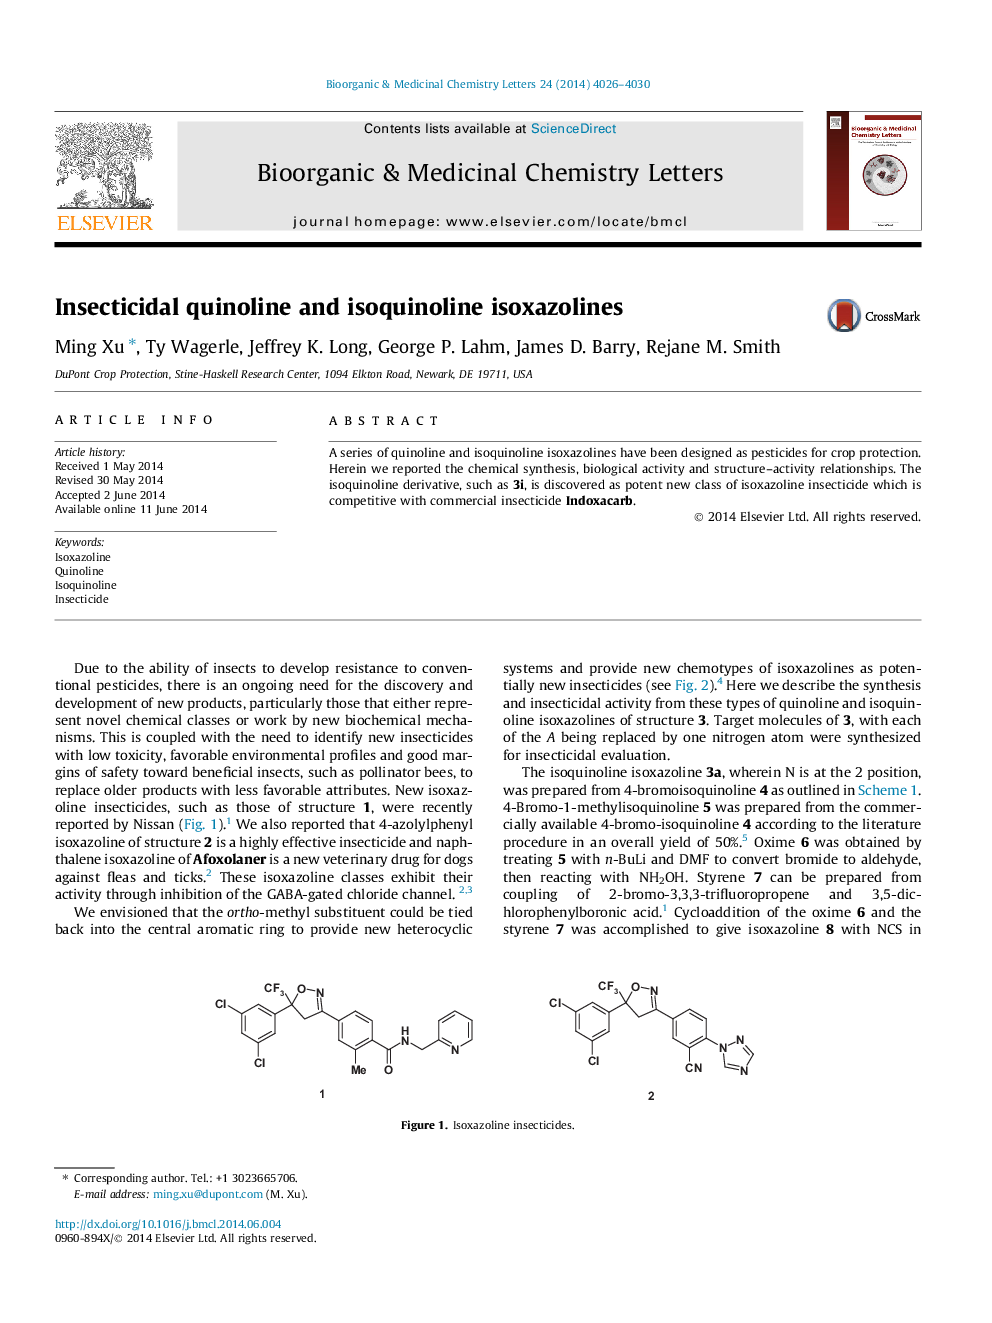 Insecticidal quinoline and isoquinoline isoxazolines